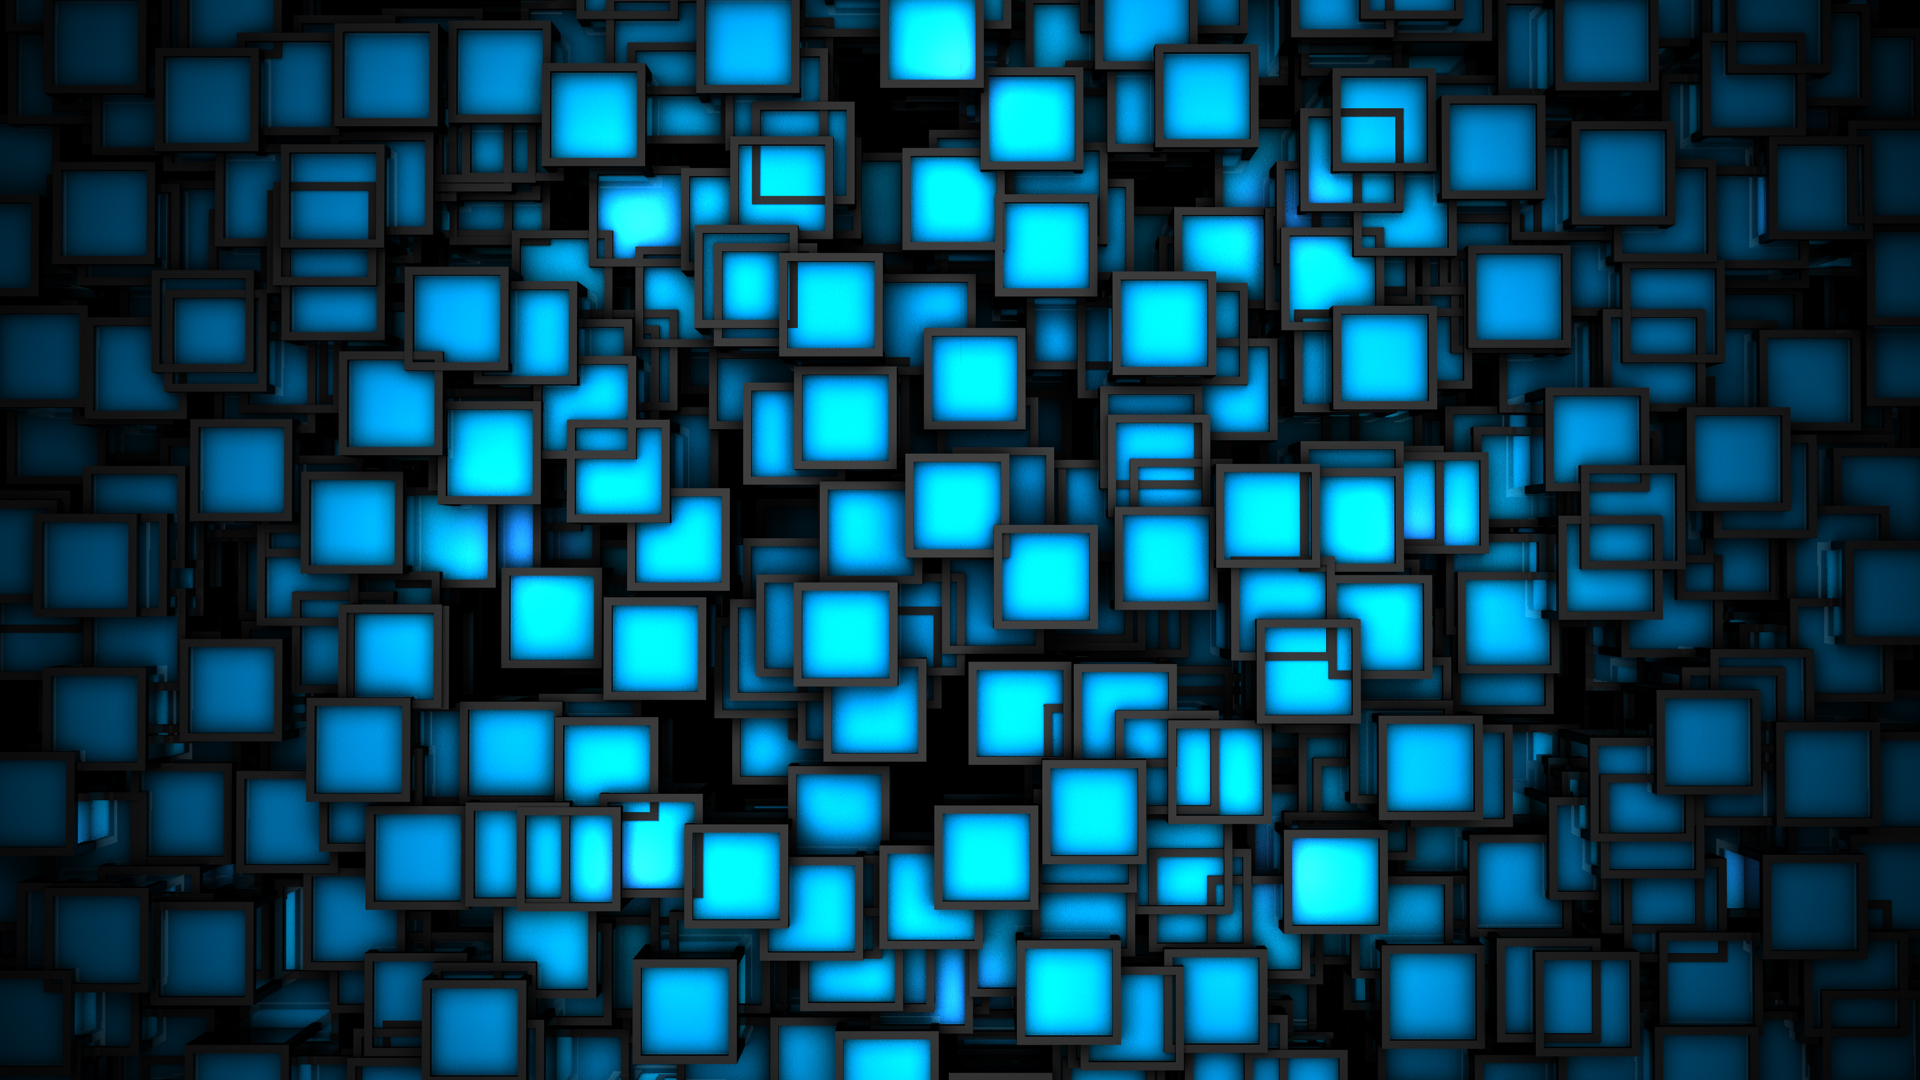 3D Blue Neon Cubes Wallpaper